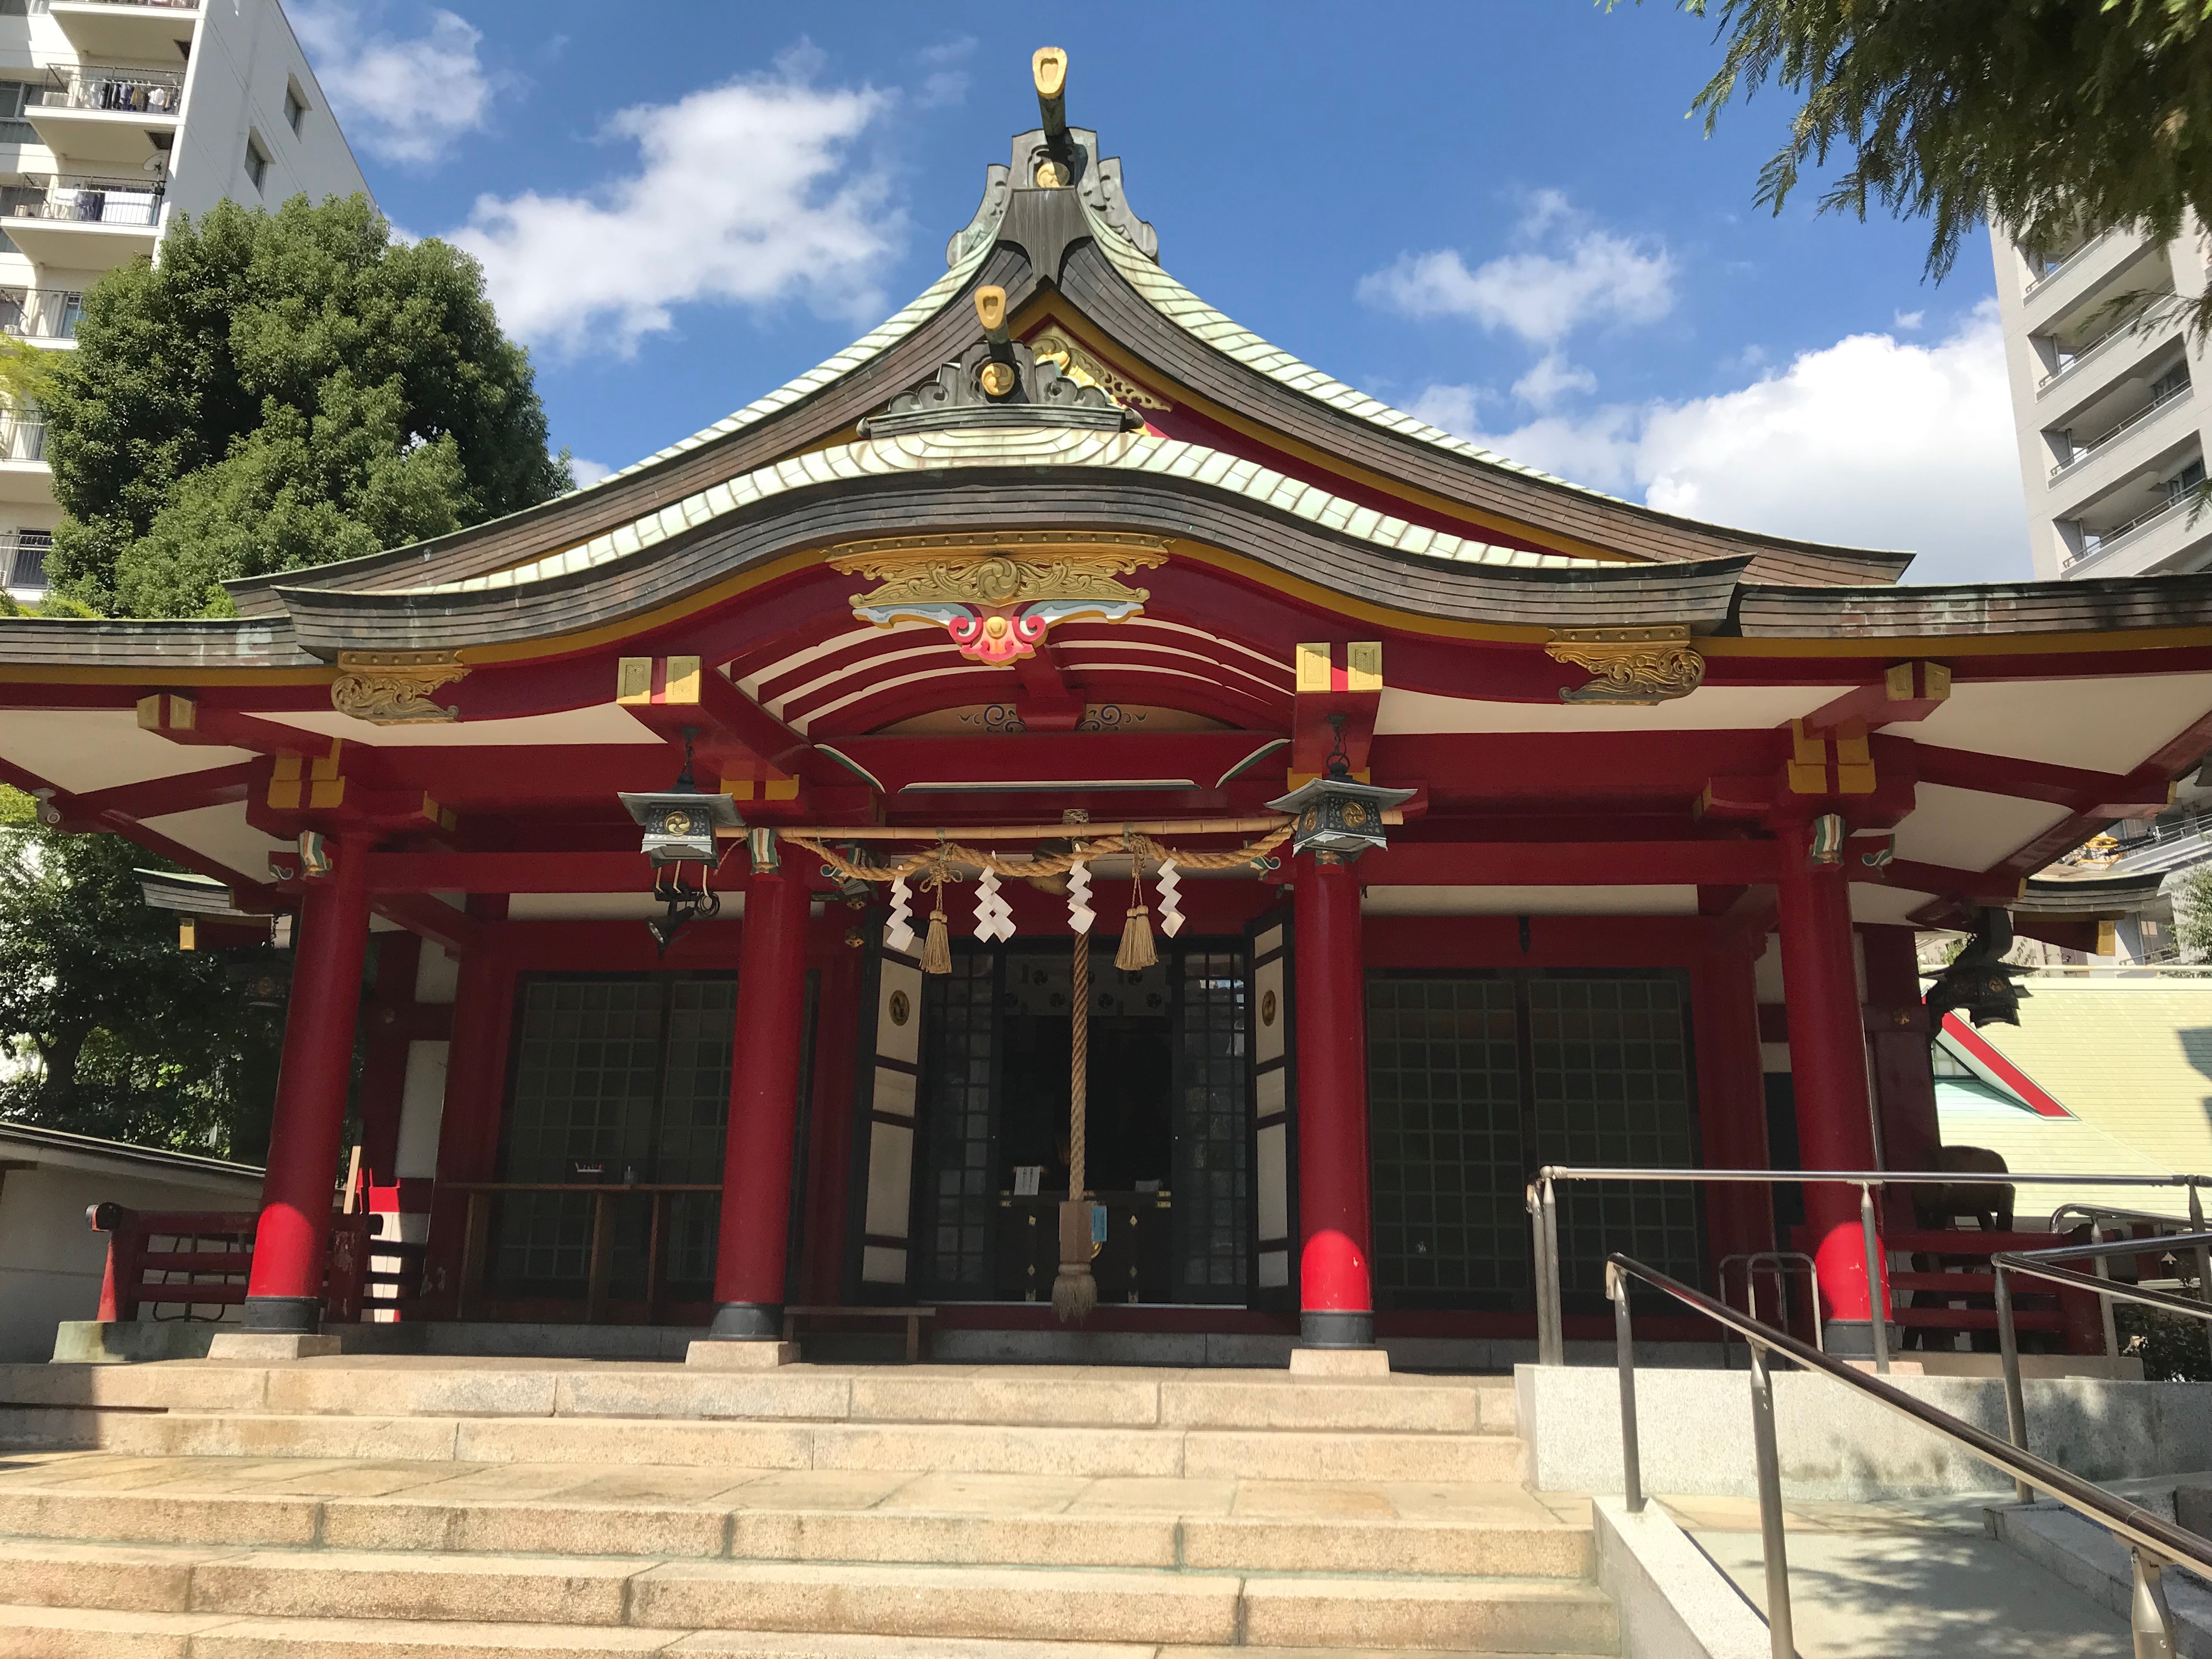 二宮神社 神戸 御朱印 嵐の聖地 金運アップのパワースポット 御朱印むすび